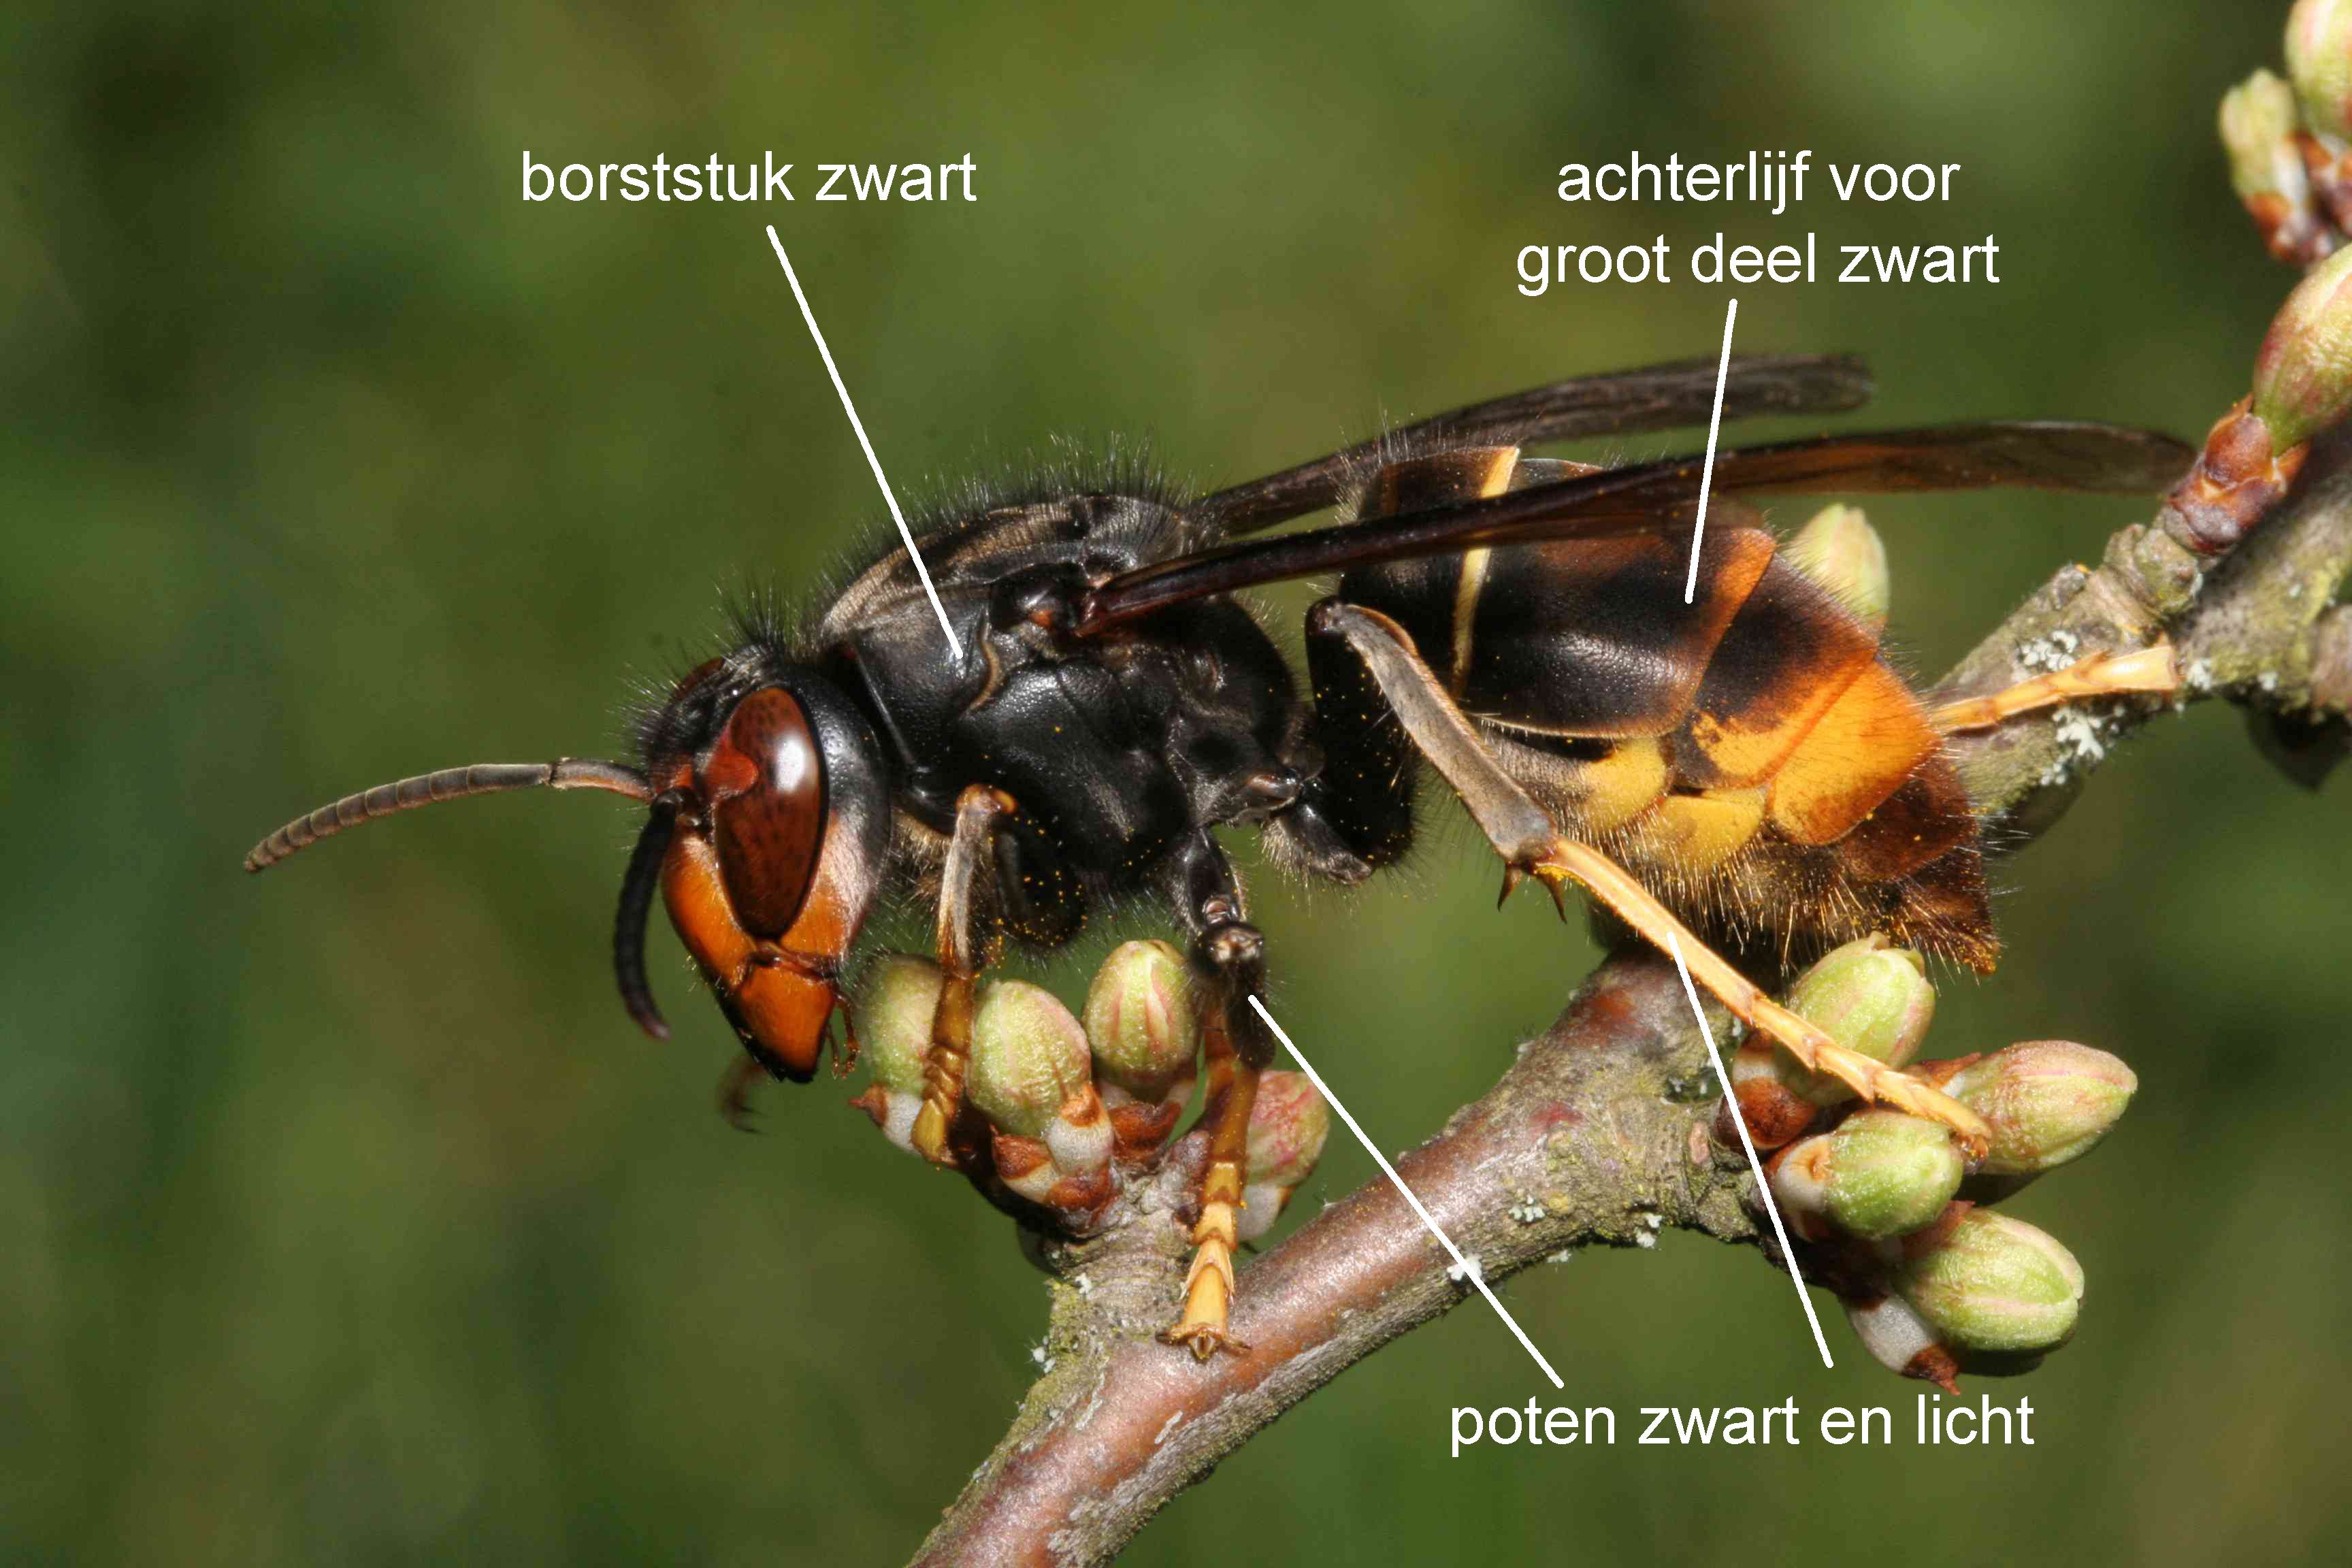 Aziatische hoornaar met de belangrijkste kenmerken aangegeven Foto Jean Haxaire